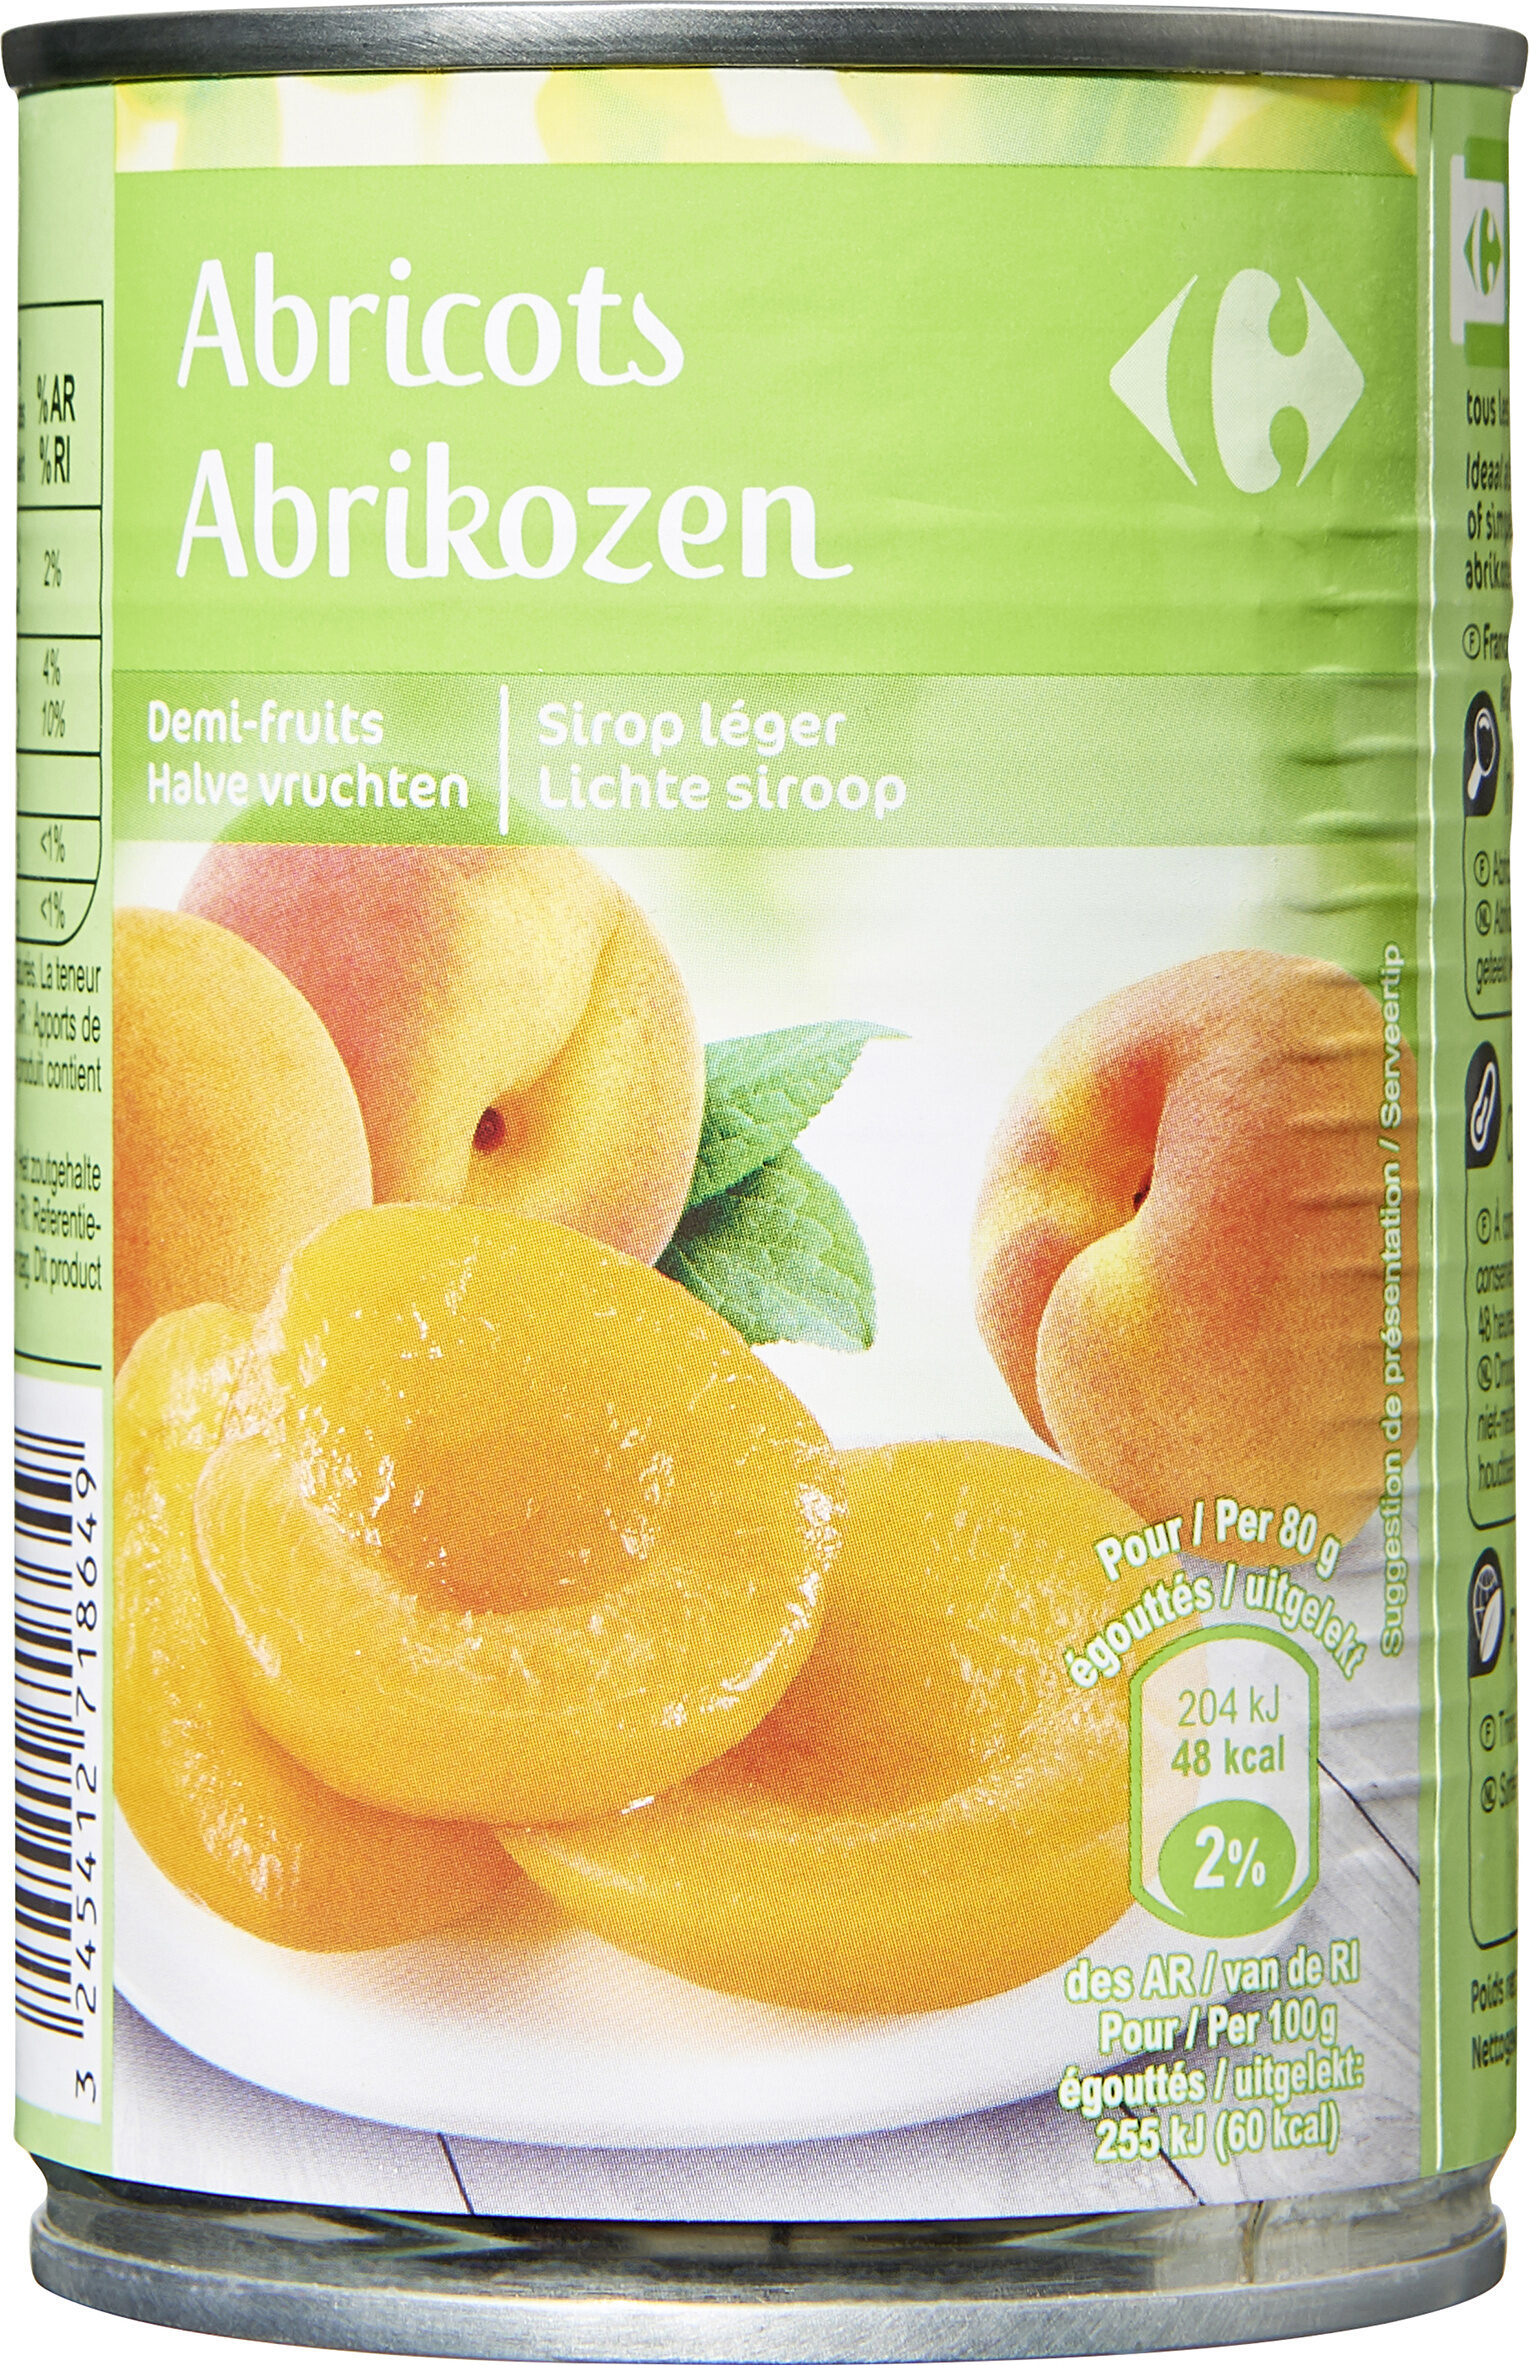 Abricots - Demi-fruits au sirop léger - Producto - fr